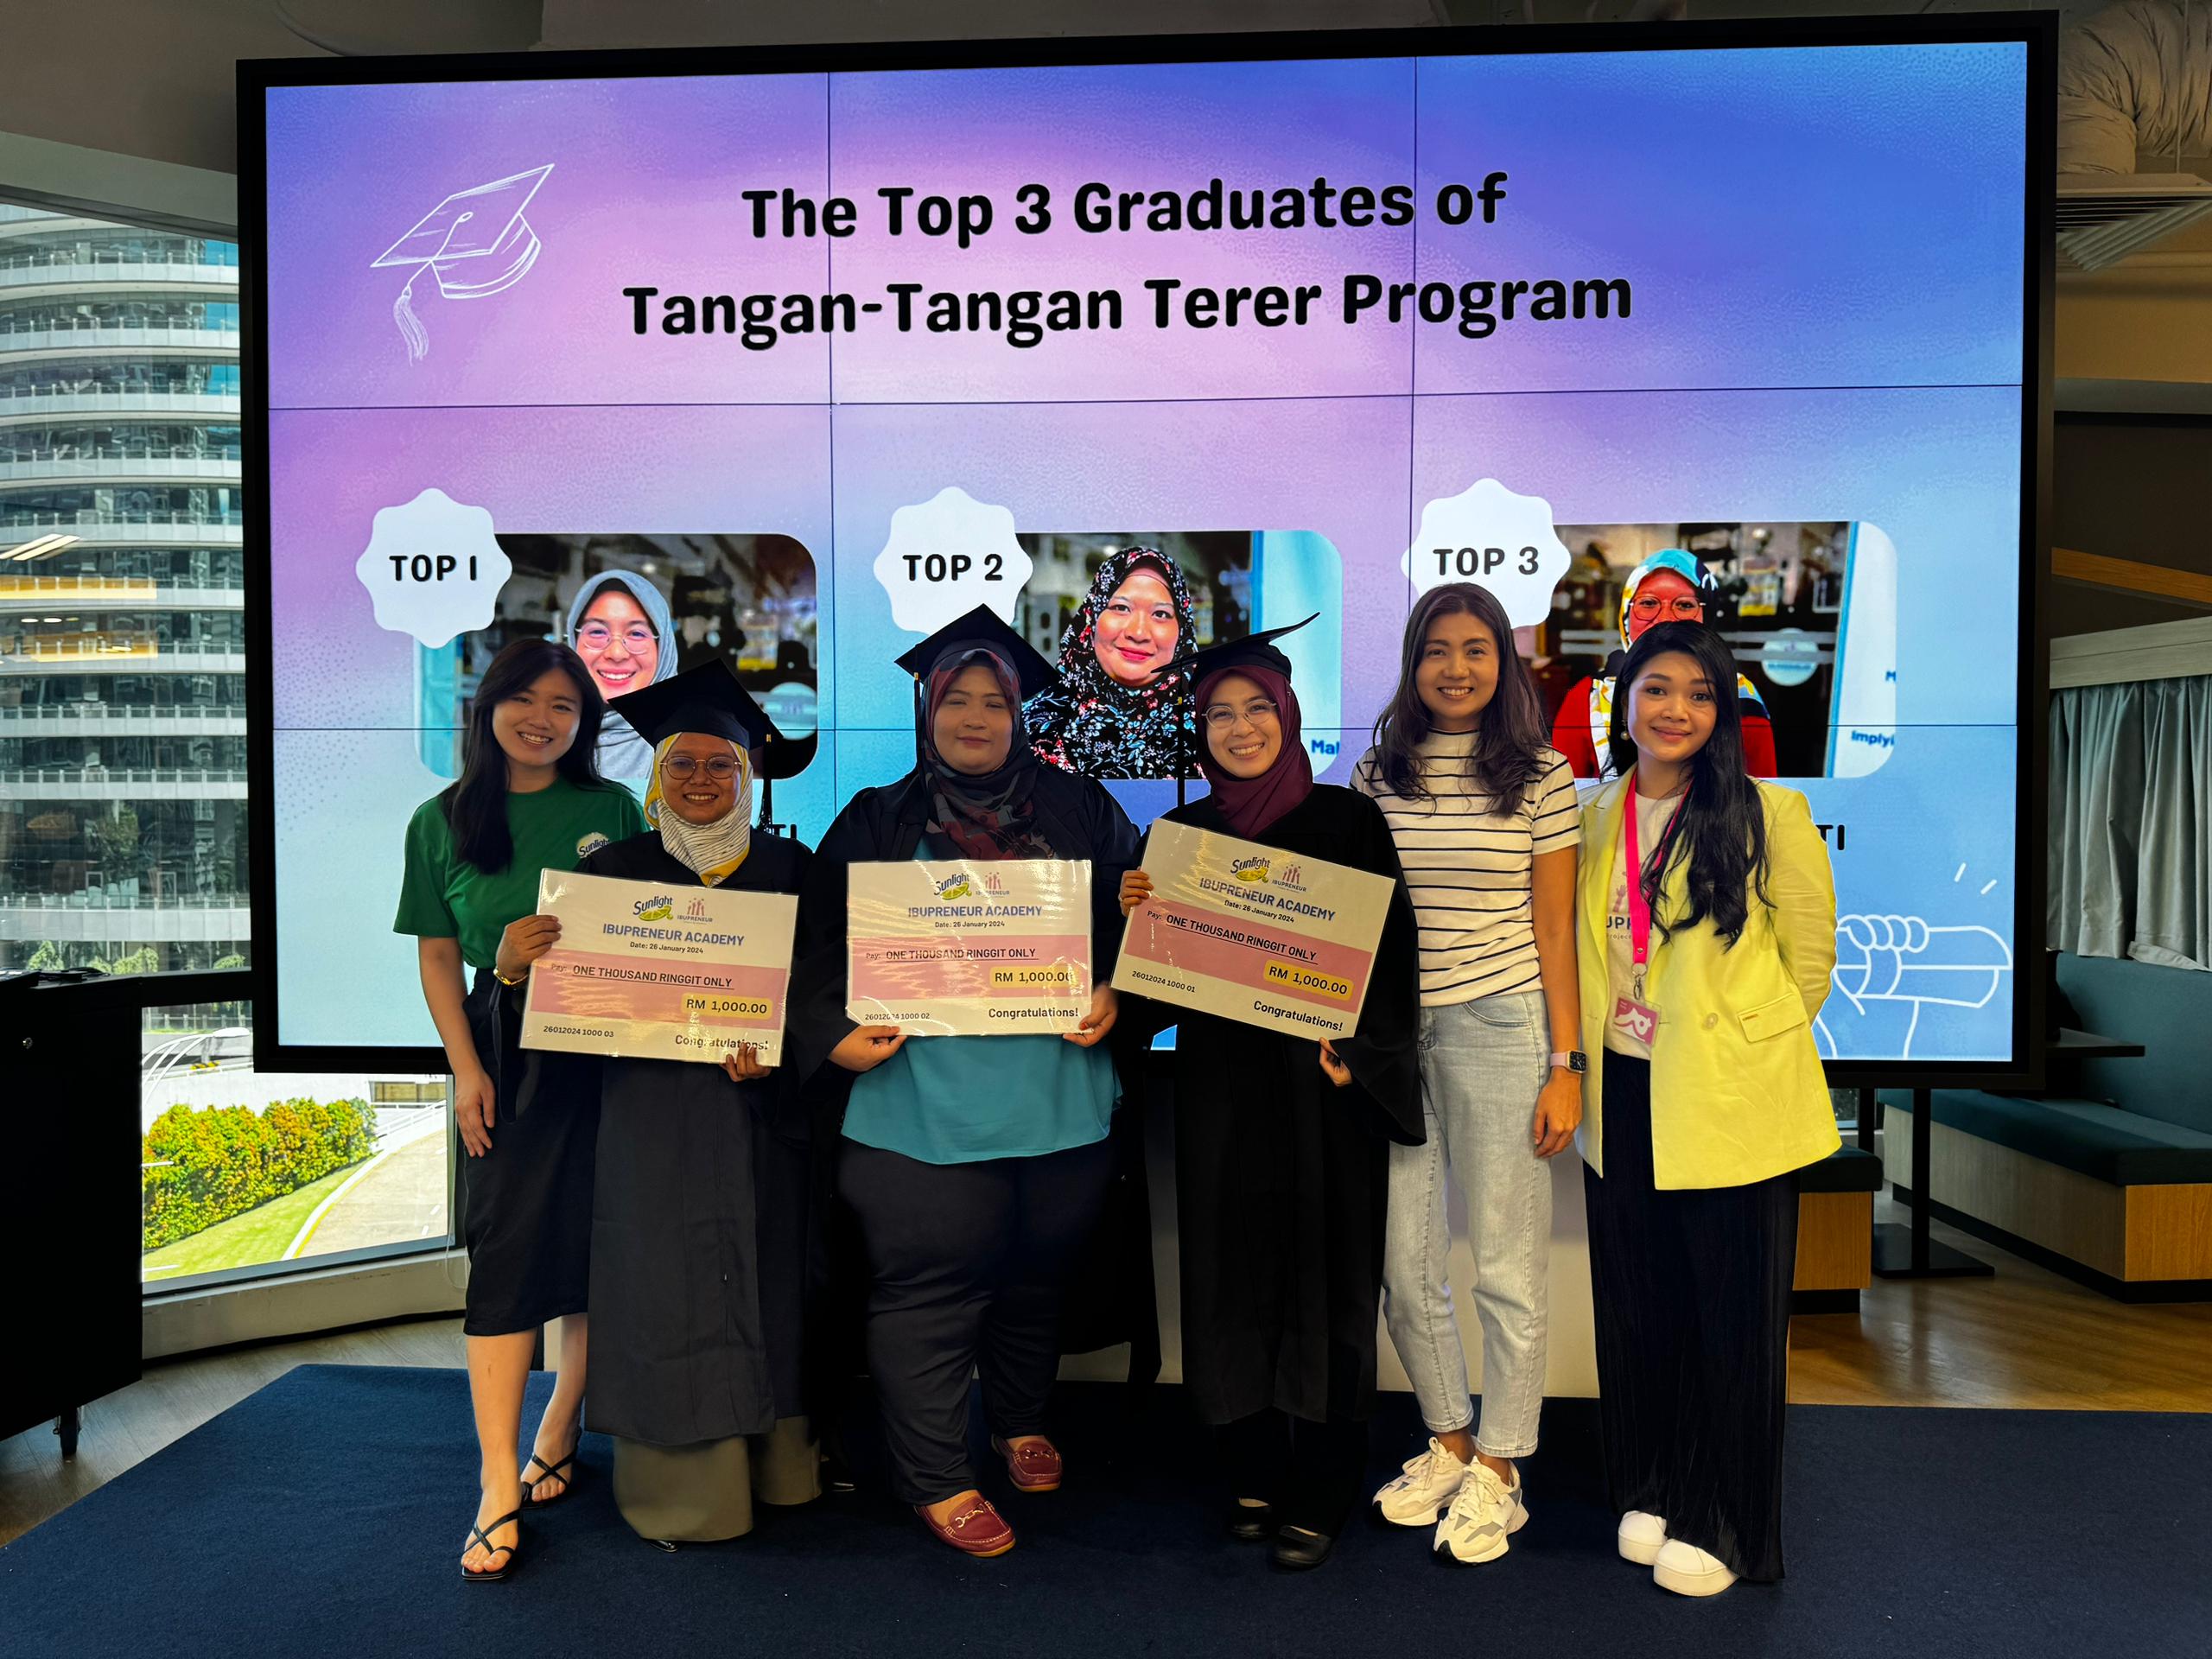 Top 3 graduates of the Sunlight Malaysia Tangan Tangan Terer programme at the recent graduation ceremony